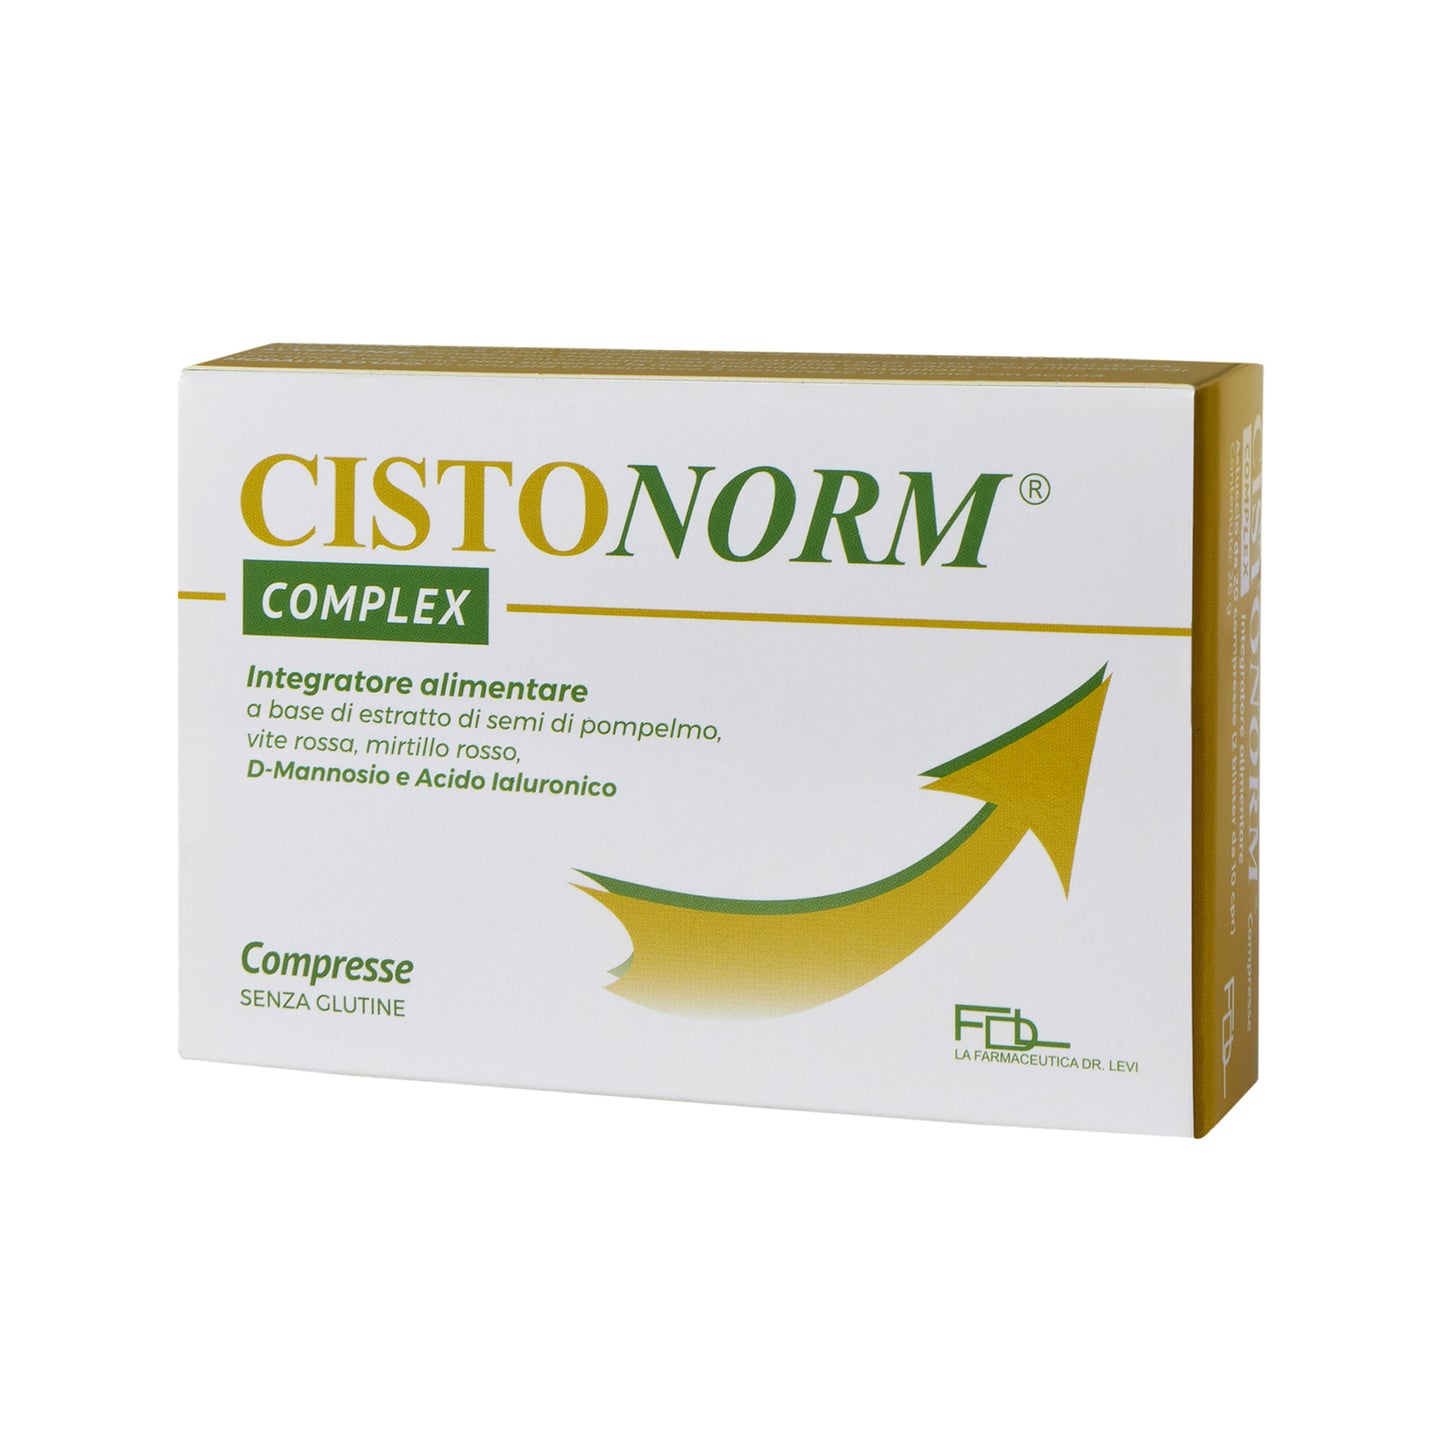 
                  
                    CISTONORM Complex Compresse - Integratore alimentare per Cistite
                  
                